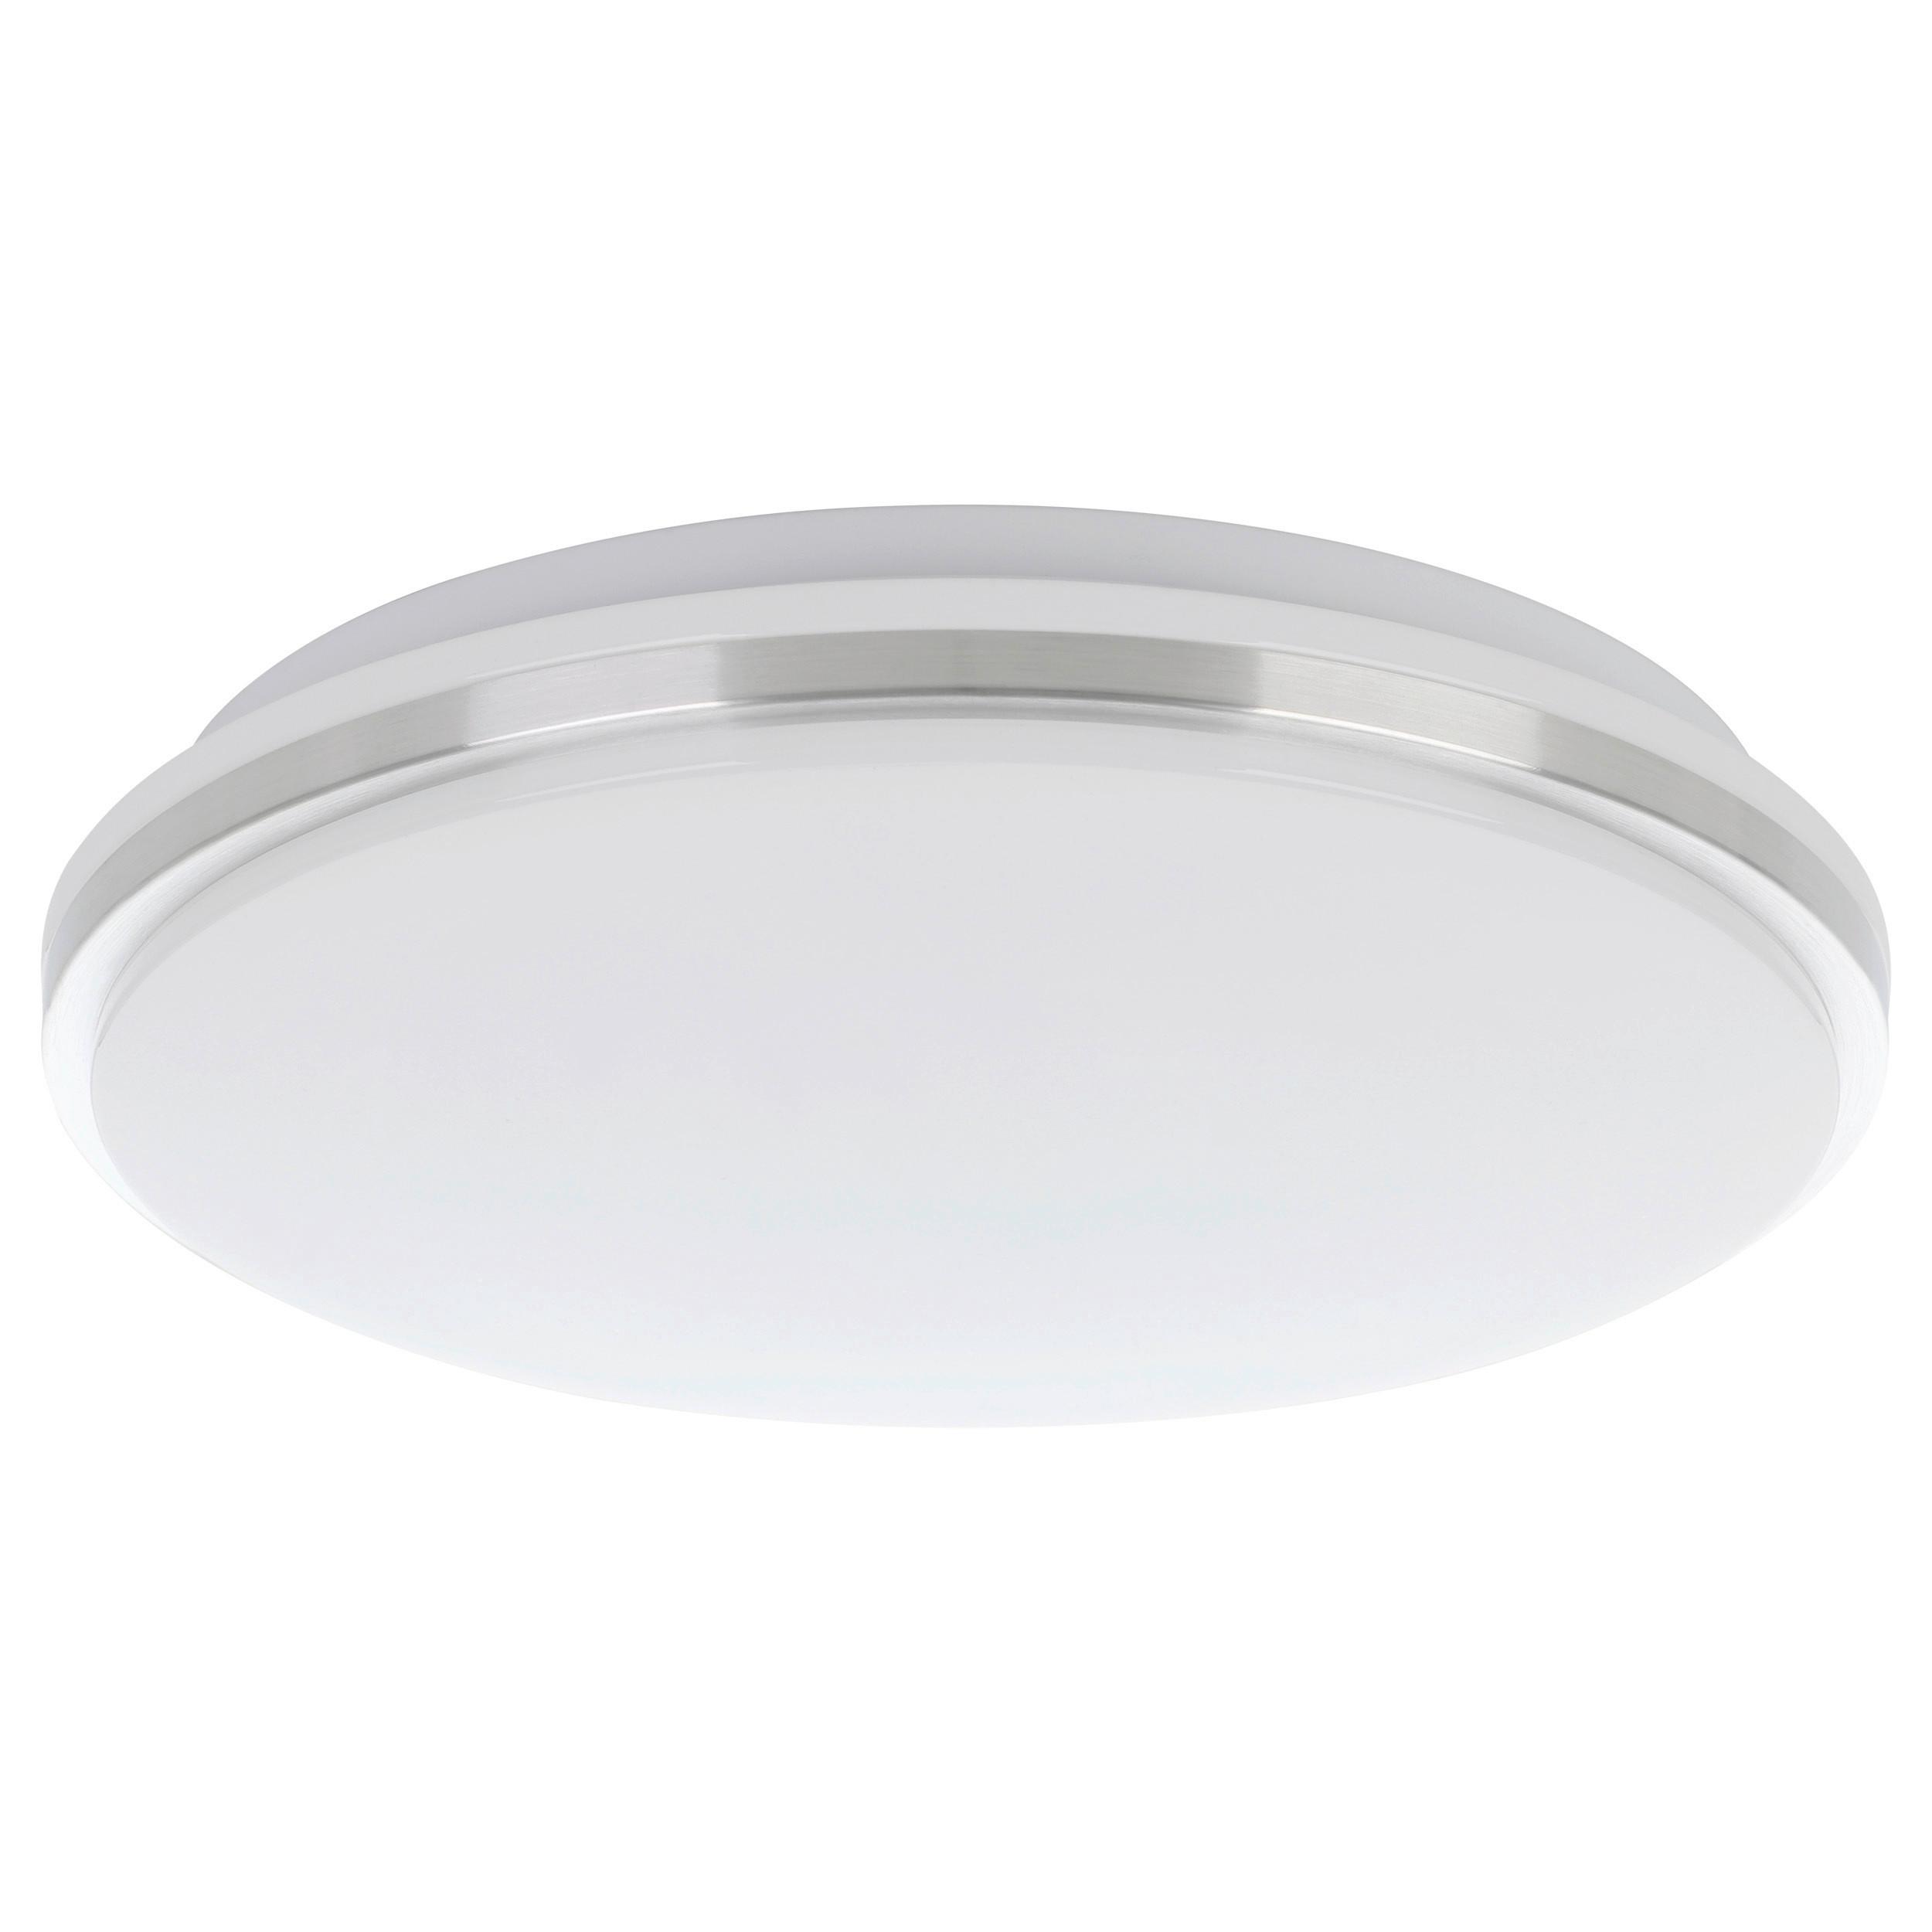 LED-Wandleuchte Marunella-S Nickel Weiss - Weiß/Nickelfarben, Basics, Kunststoff/Metall (34/6,5cm) - Eglo